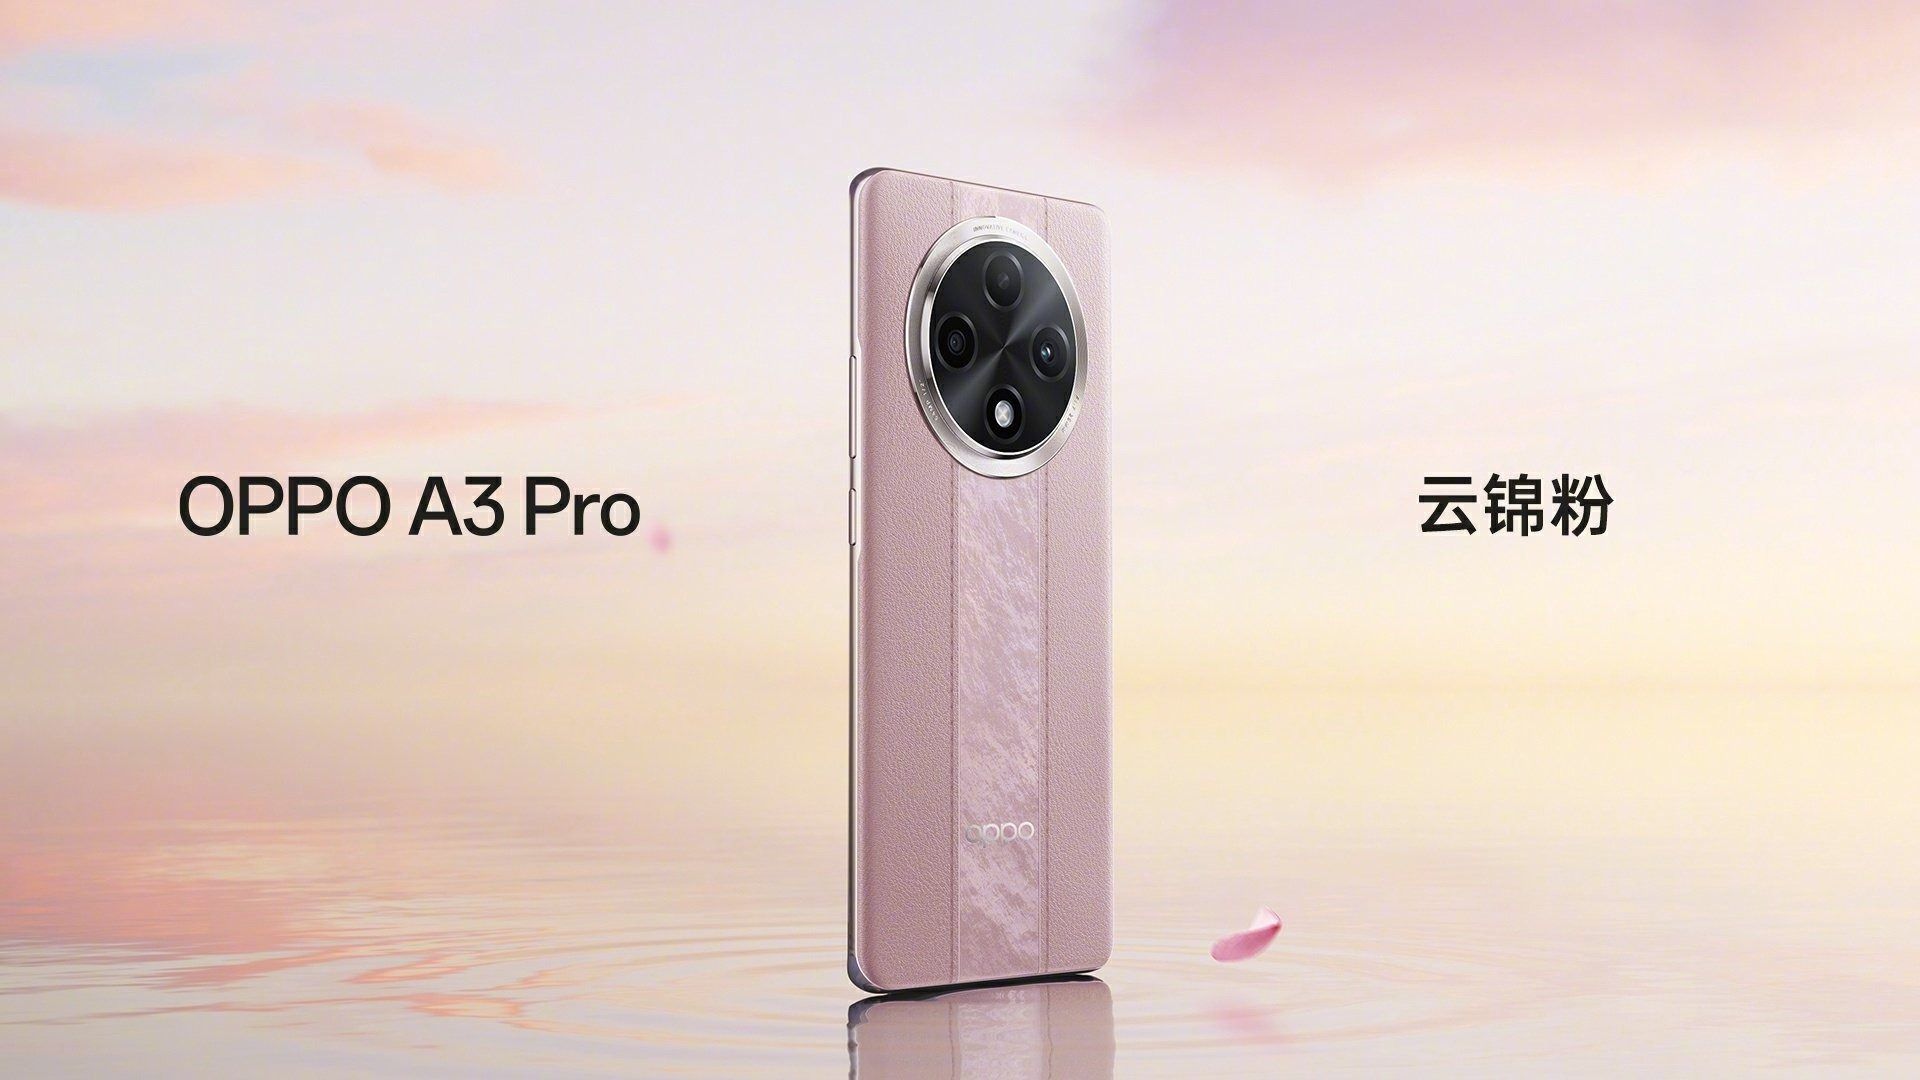 پوستر رسمی گوشی اوپو مدل A3 Pro 5g در رنگ Yun Jin Powder (رز)